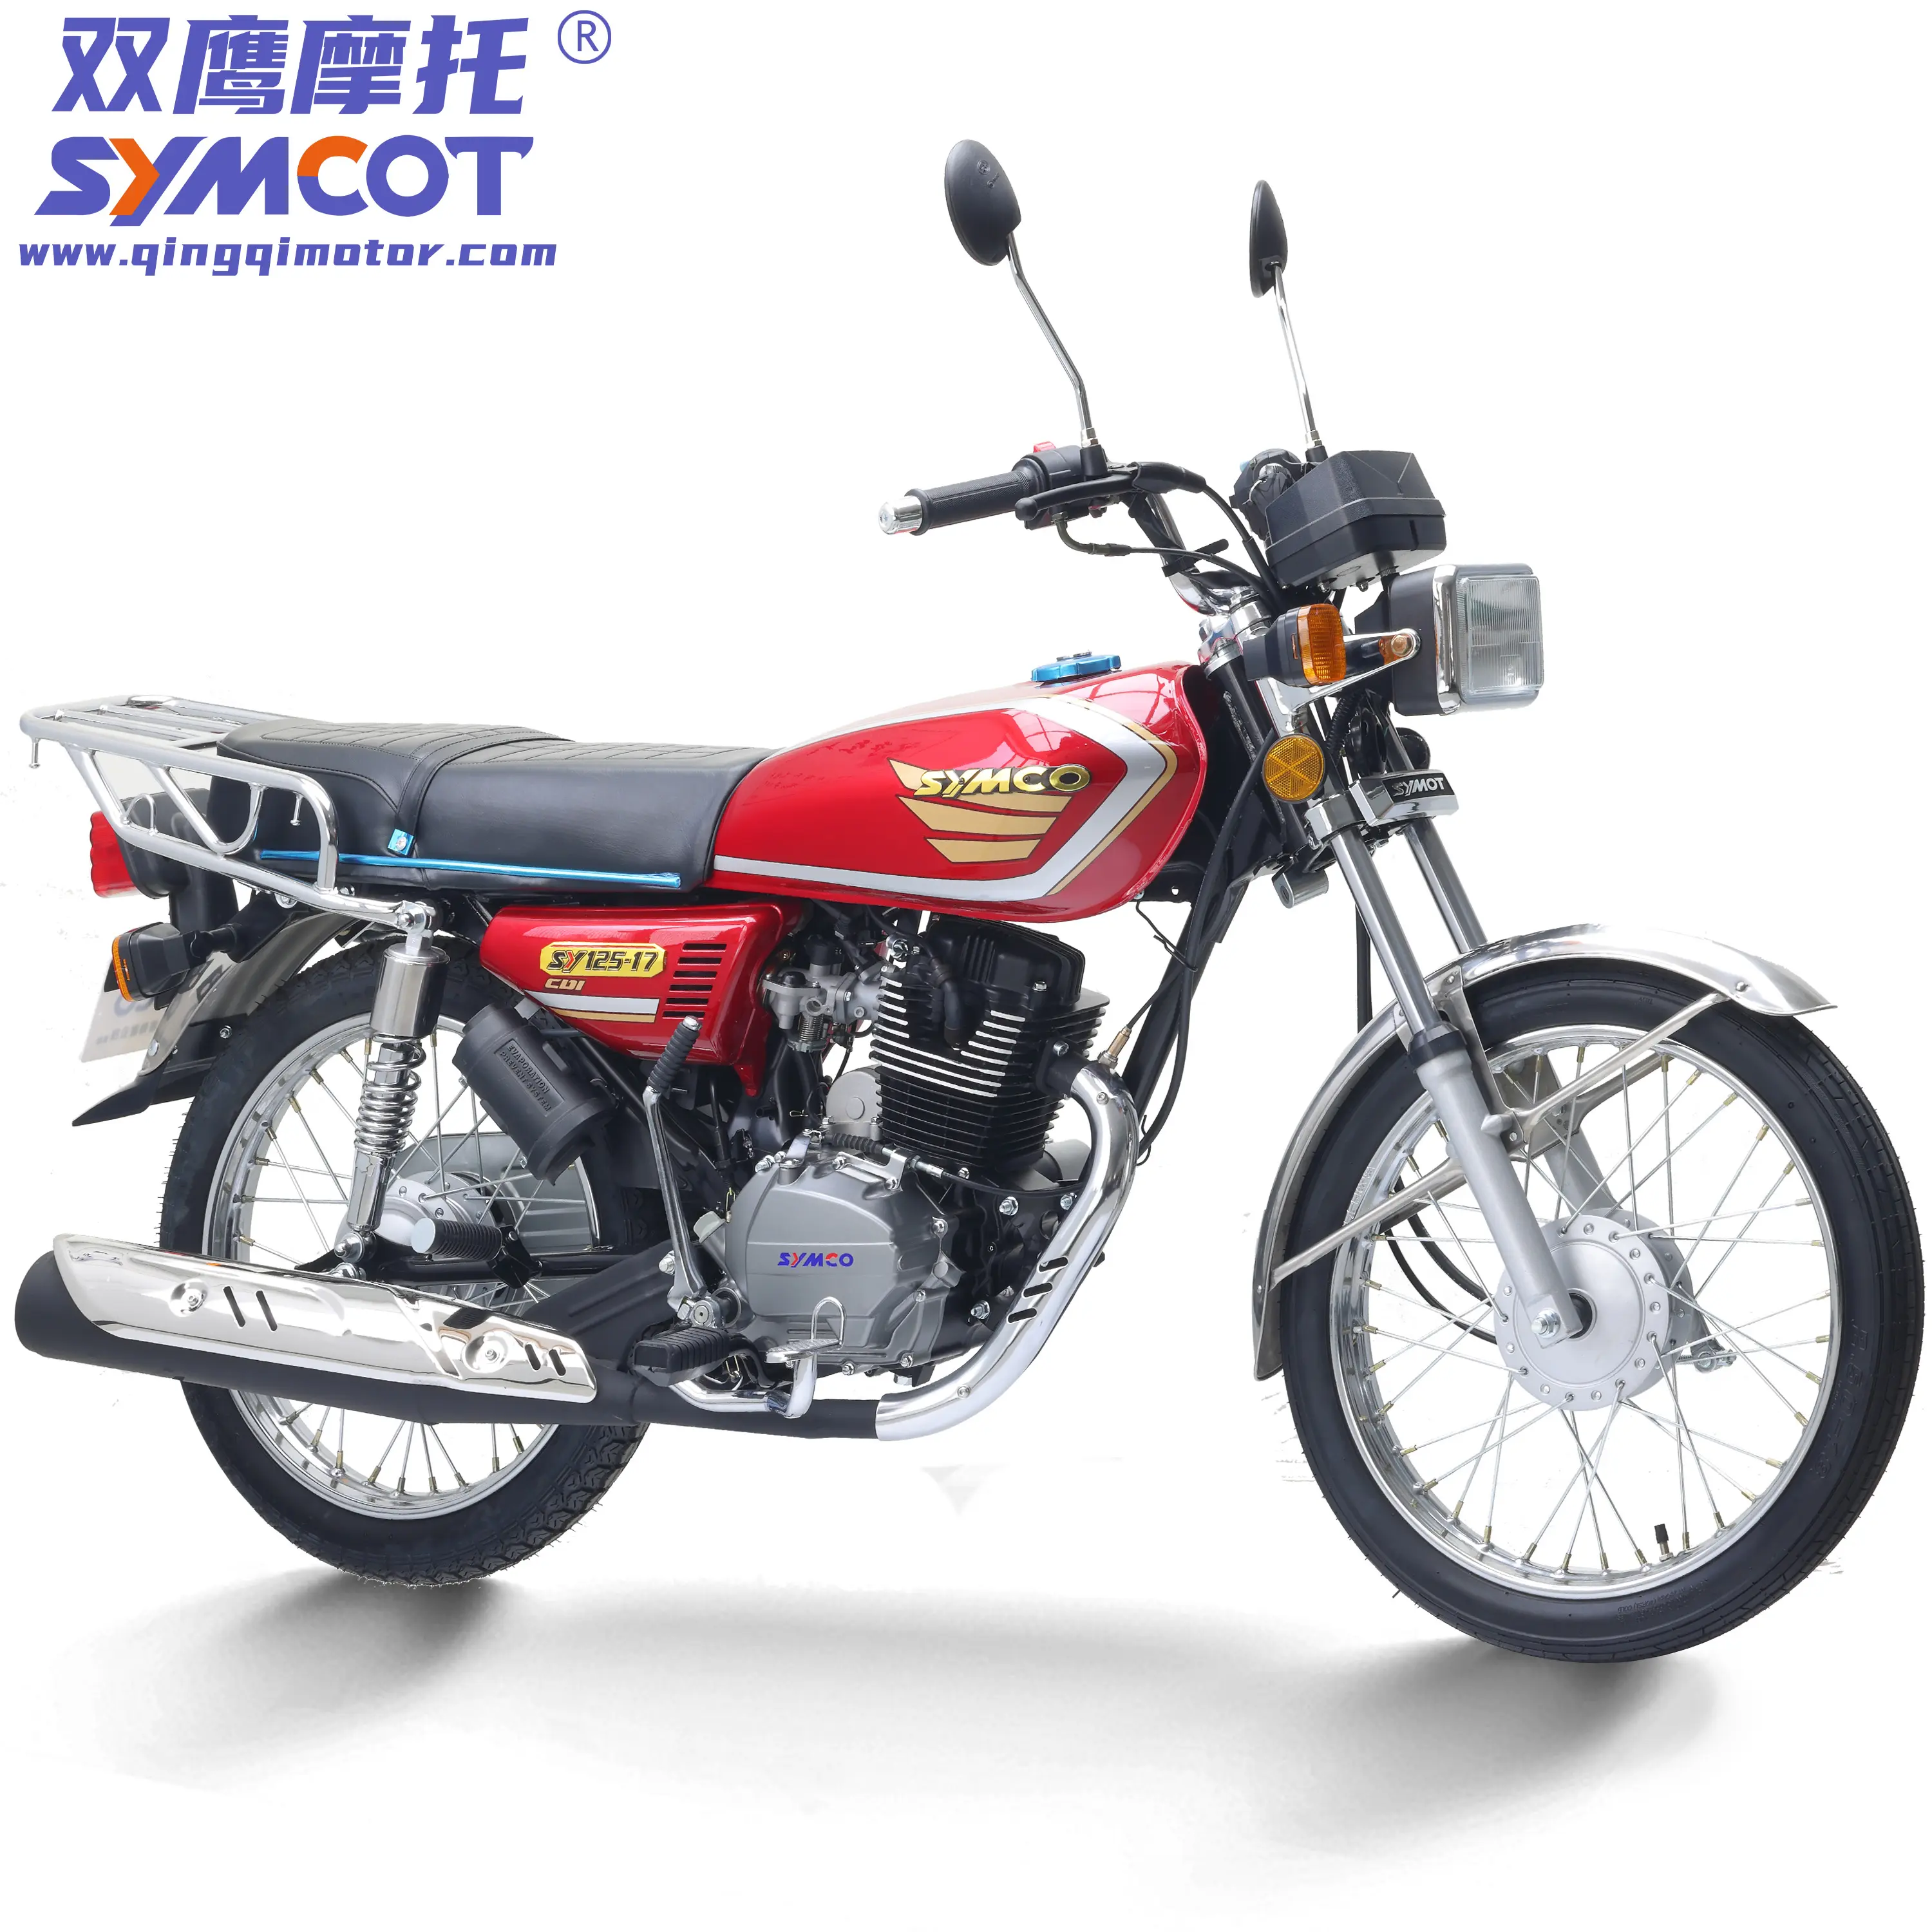 رخيصة الصين دراجة نارية CG125 CG150 CG175 اقتصادية الشارع نموذج دراجة نارية مع جودة عالية التشطيب على استعداد للسفينة